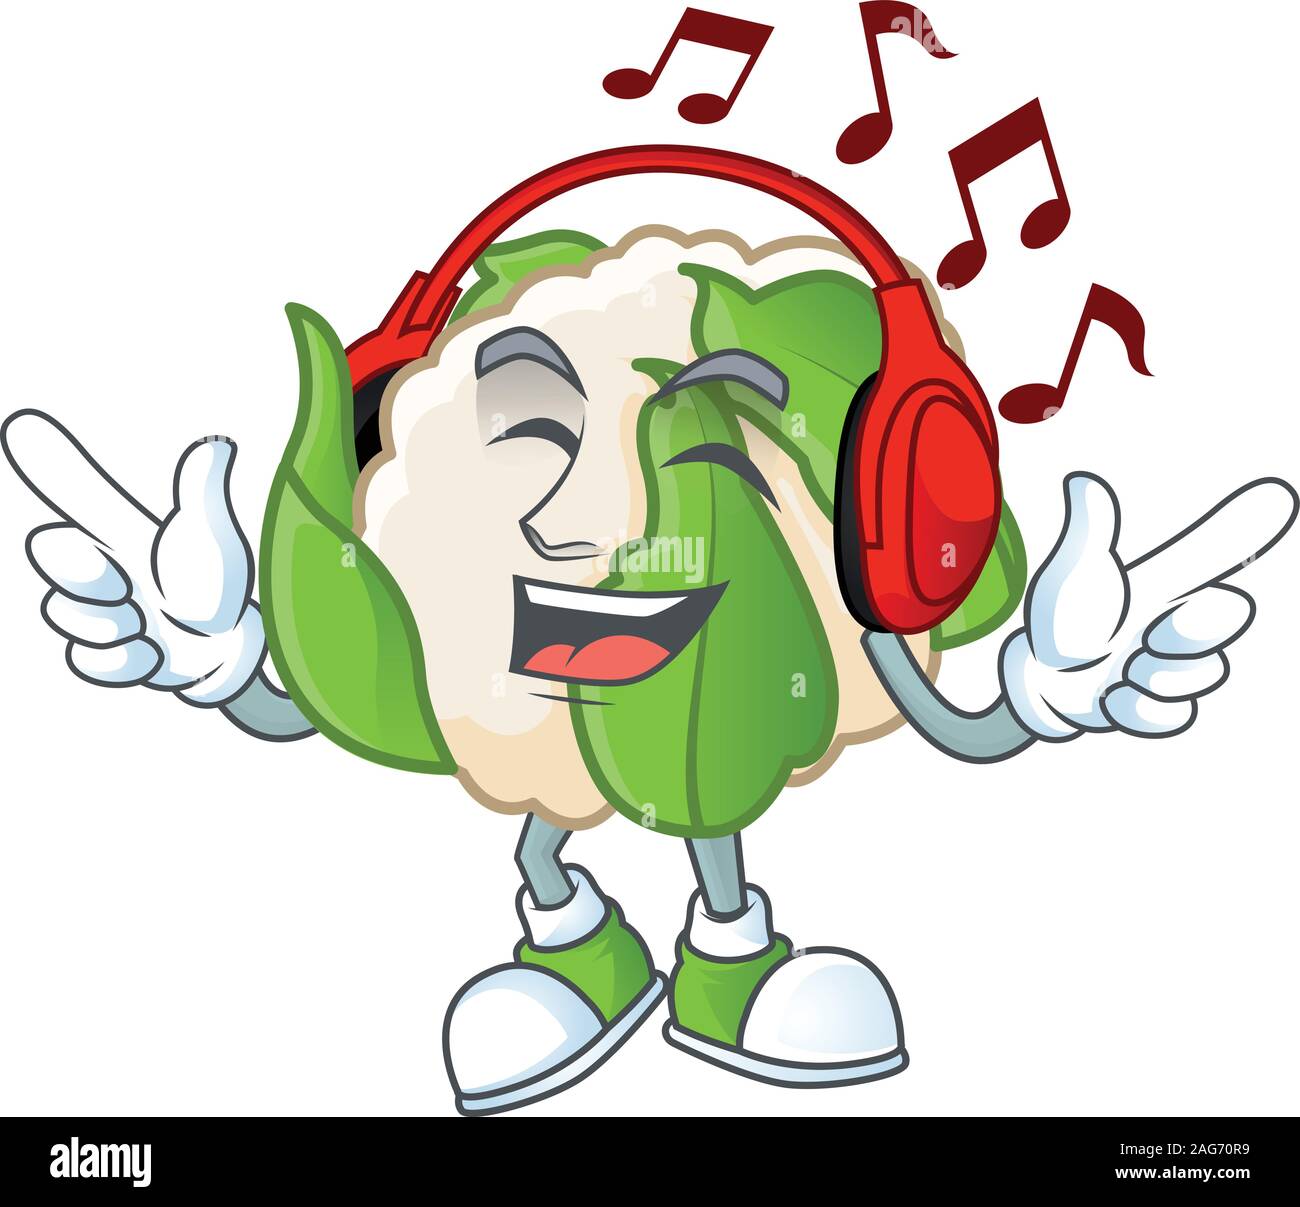 Gesang und Musik hören Blumenkohl Zeichentrickfigur Stock Vektor